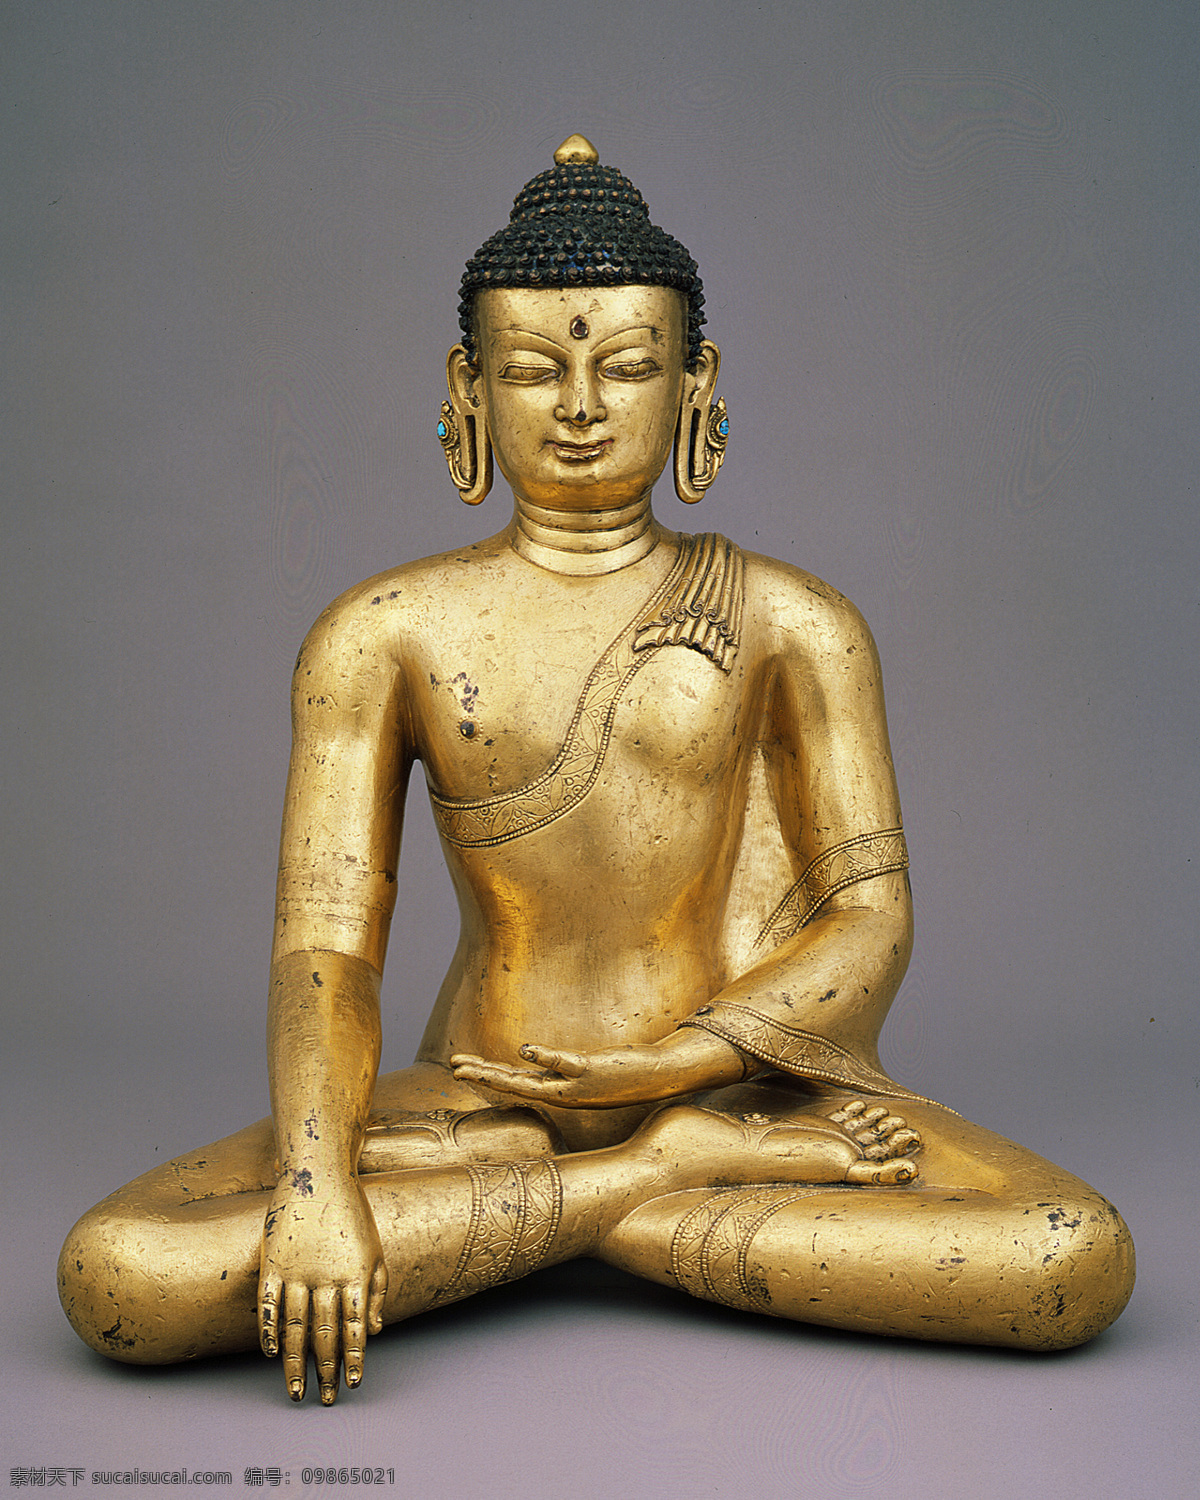 佛像 佛教人物 佛 文化艺术 美国 鲁宾 博物馆 圣像 宗教信仰 菩萨 铜像 古代 人物 古典